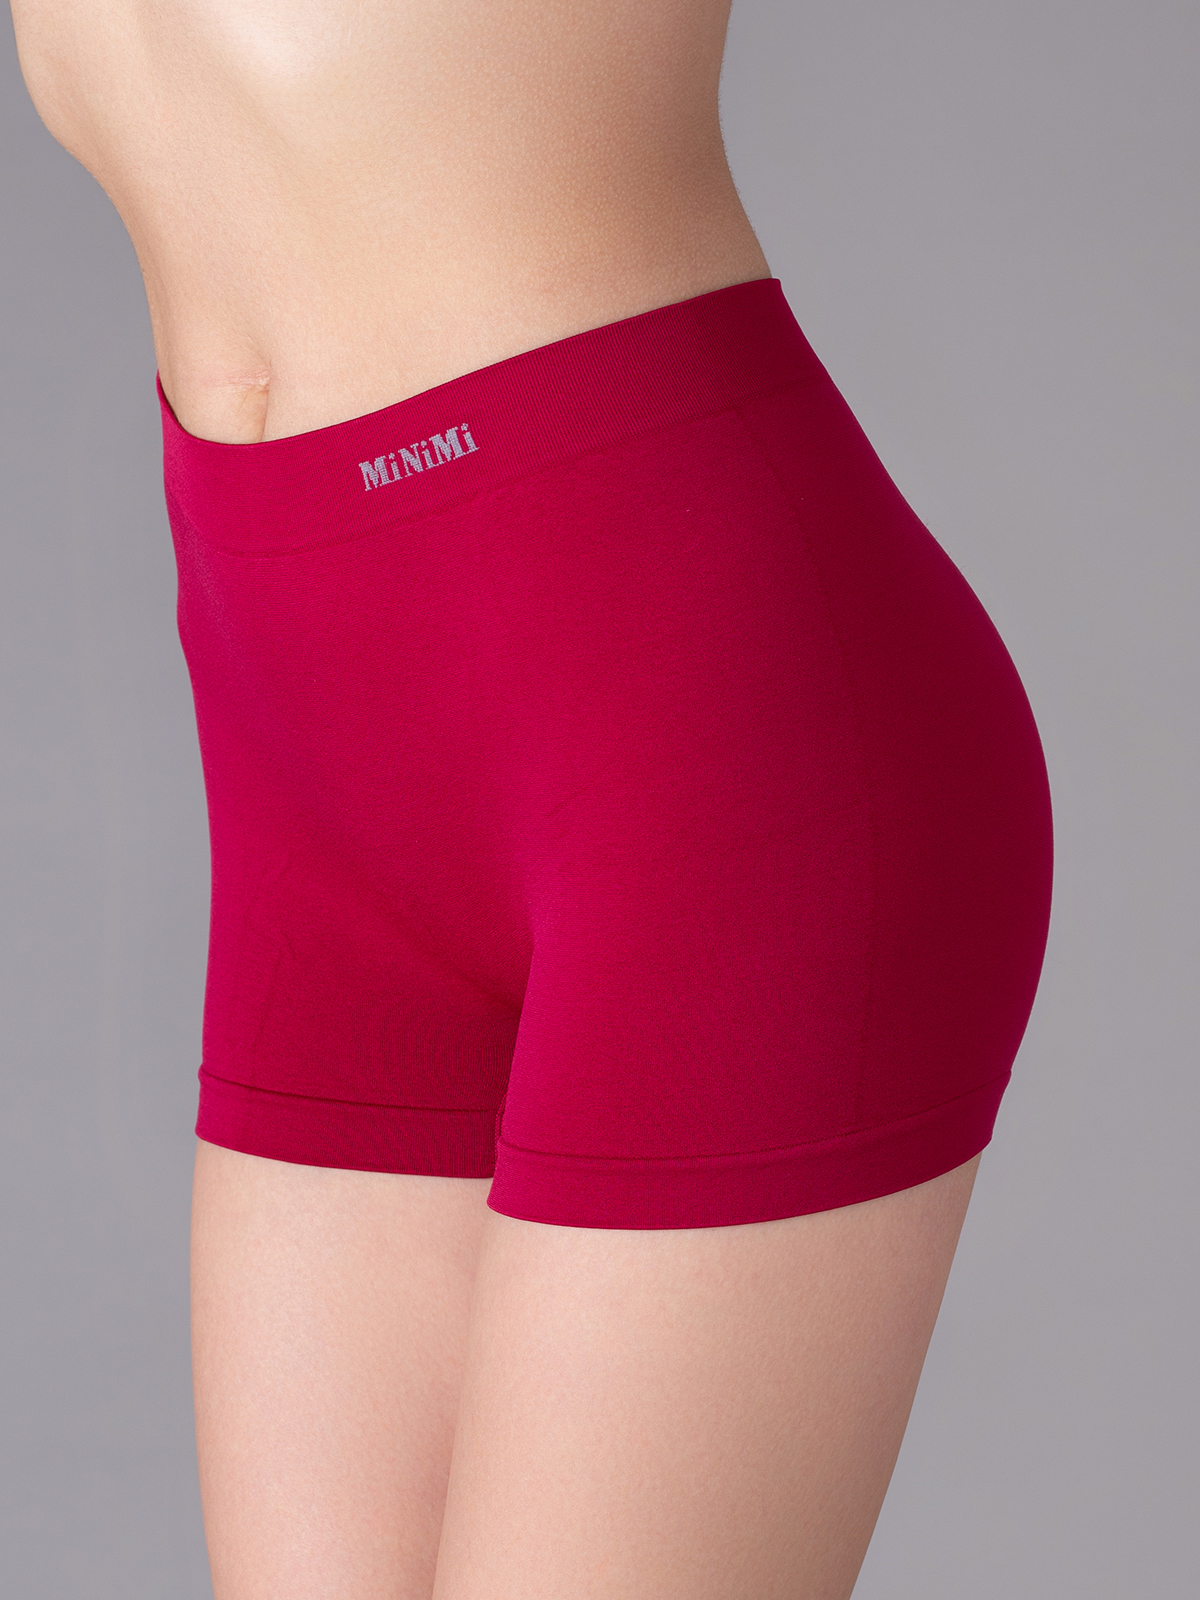 Трусы женские Minimi MA 270 shorts красные L/XL